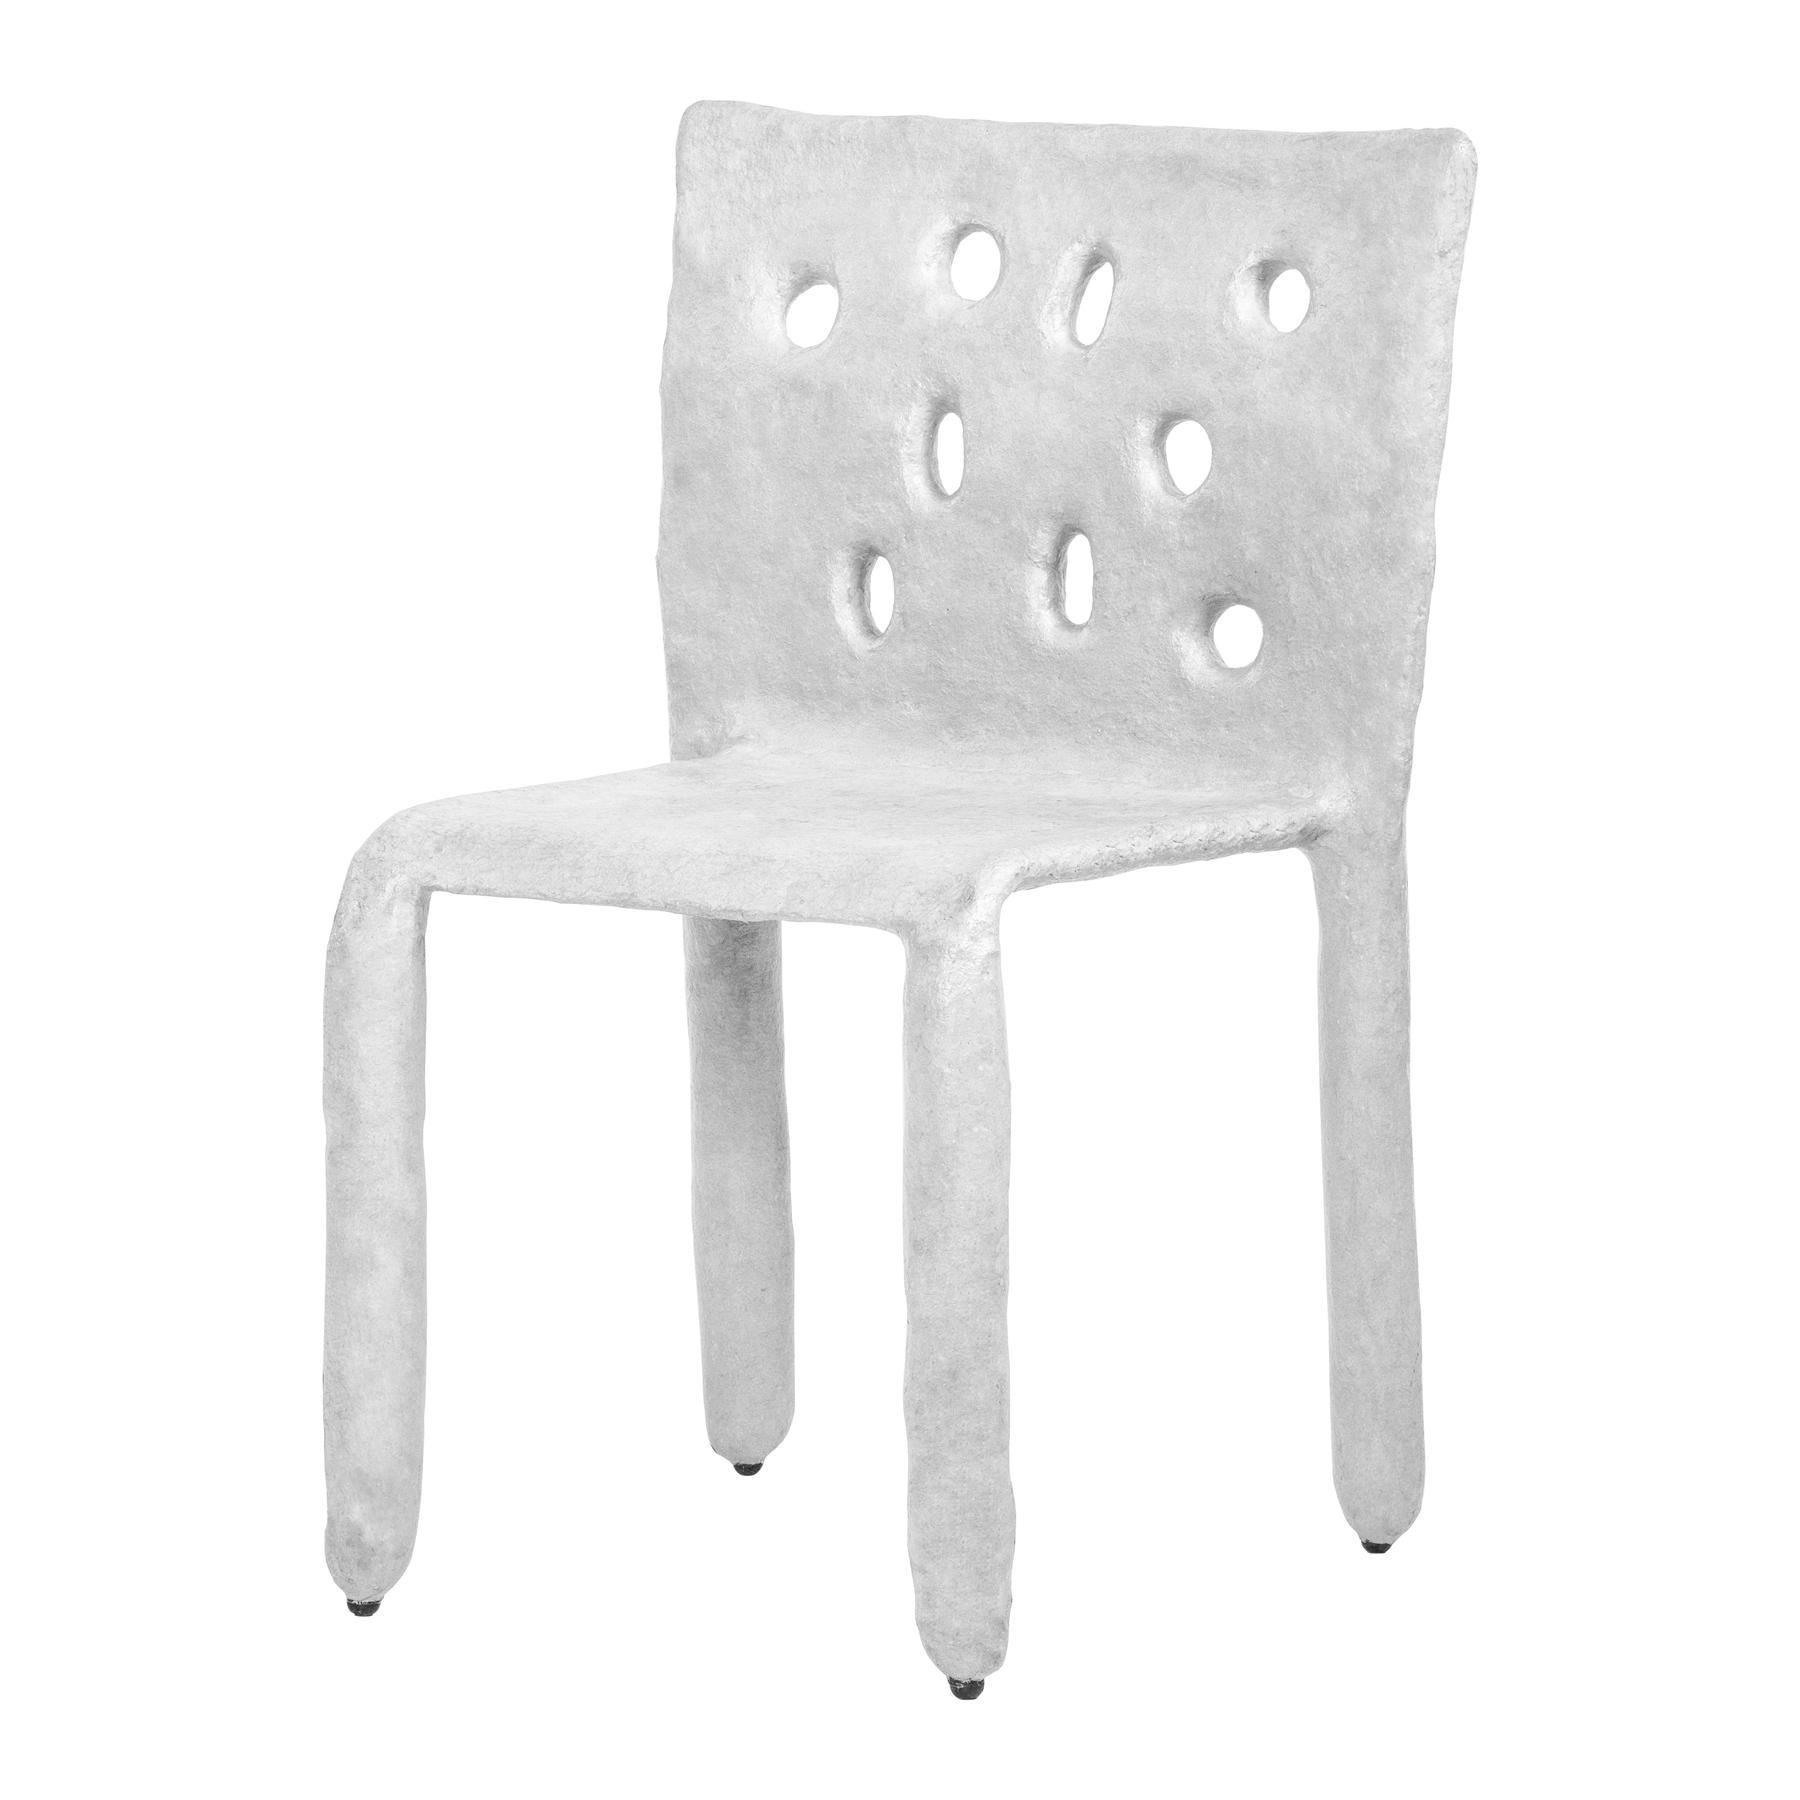 Chaise contemporaine sculptée en blanc de FAINA